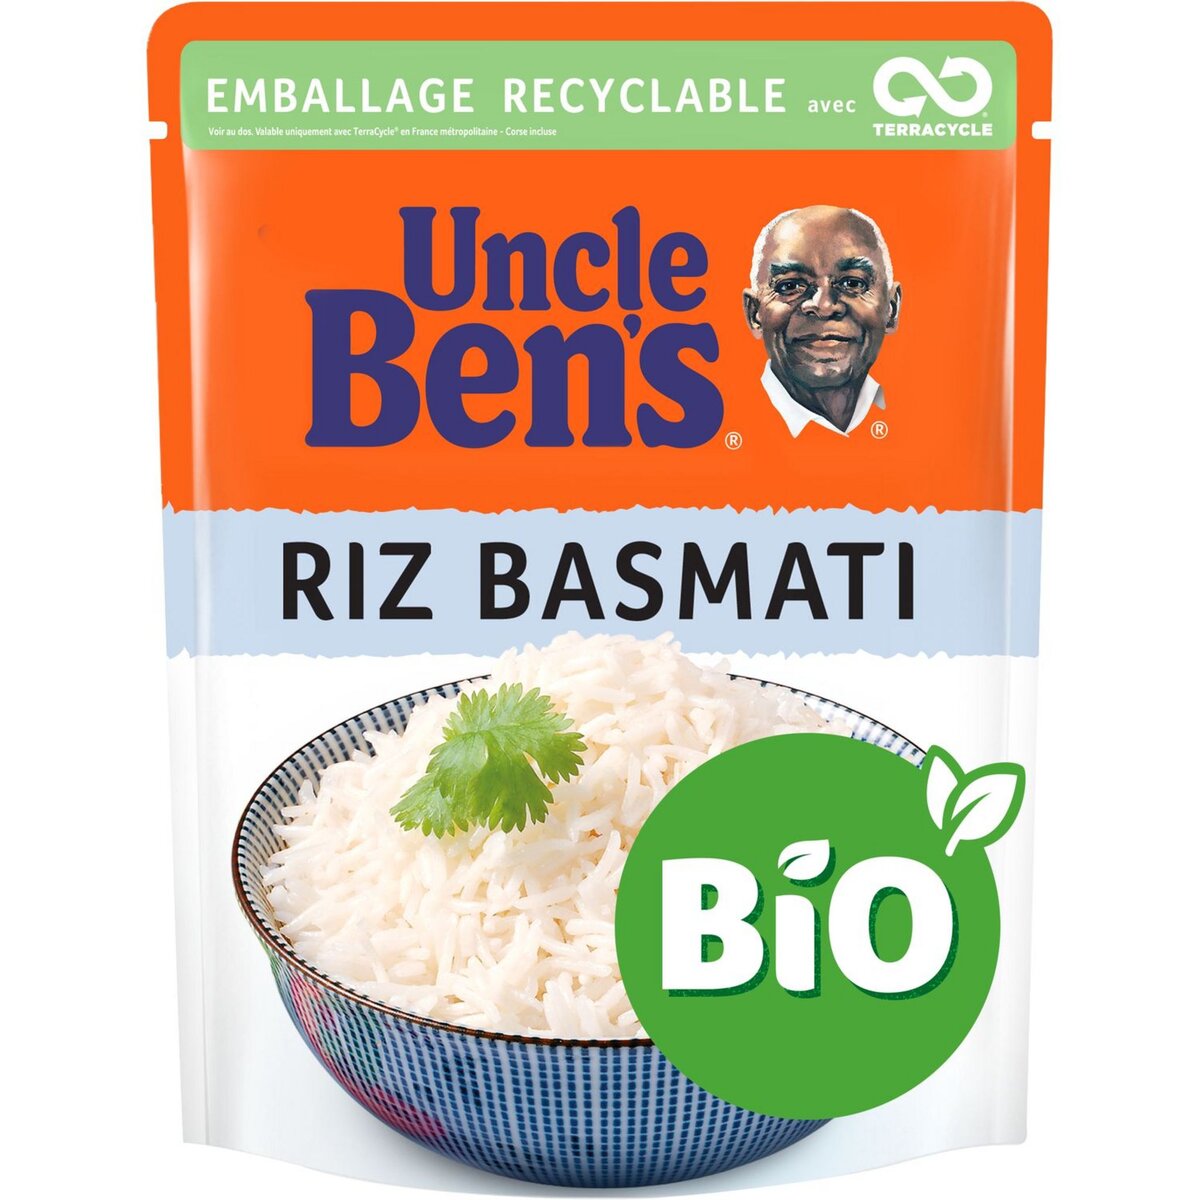 BEN'S ORIGINAL Riz Basmati Bio sachet recyclable prêt en 2 min 240g